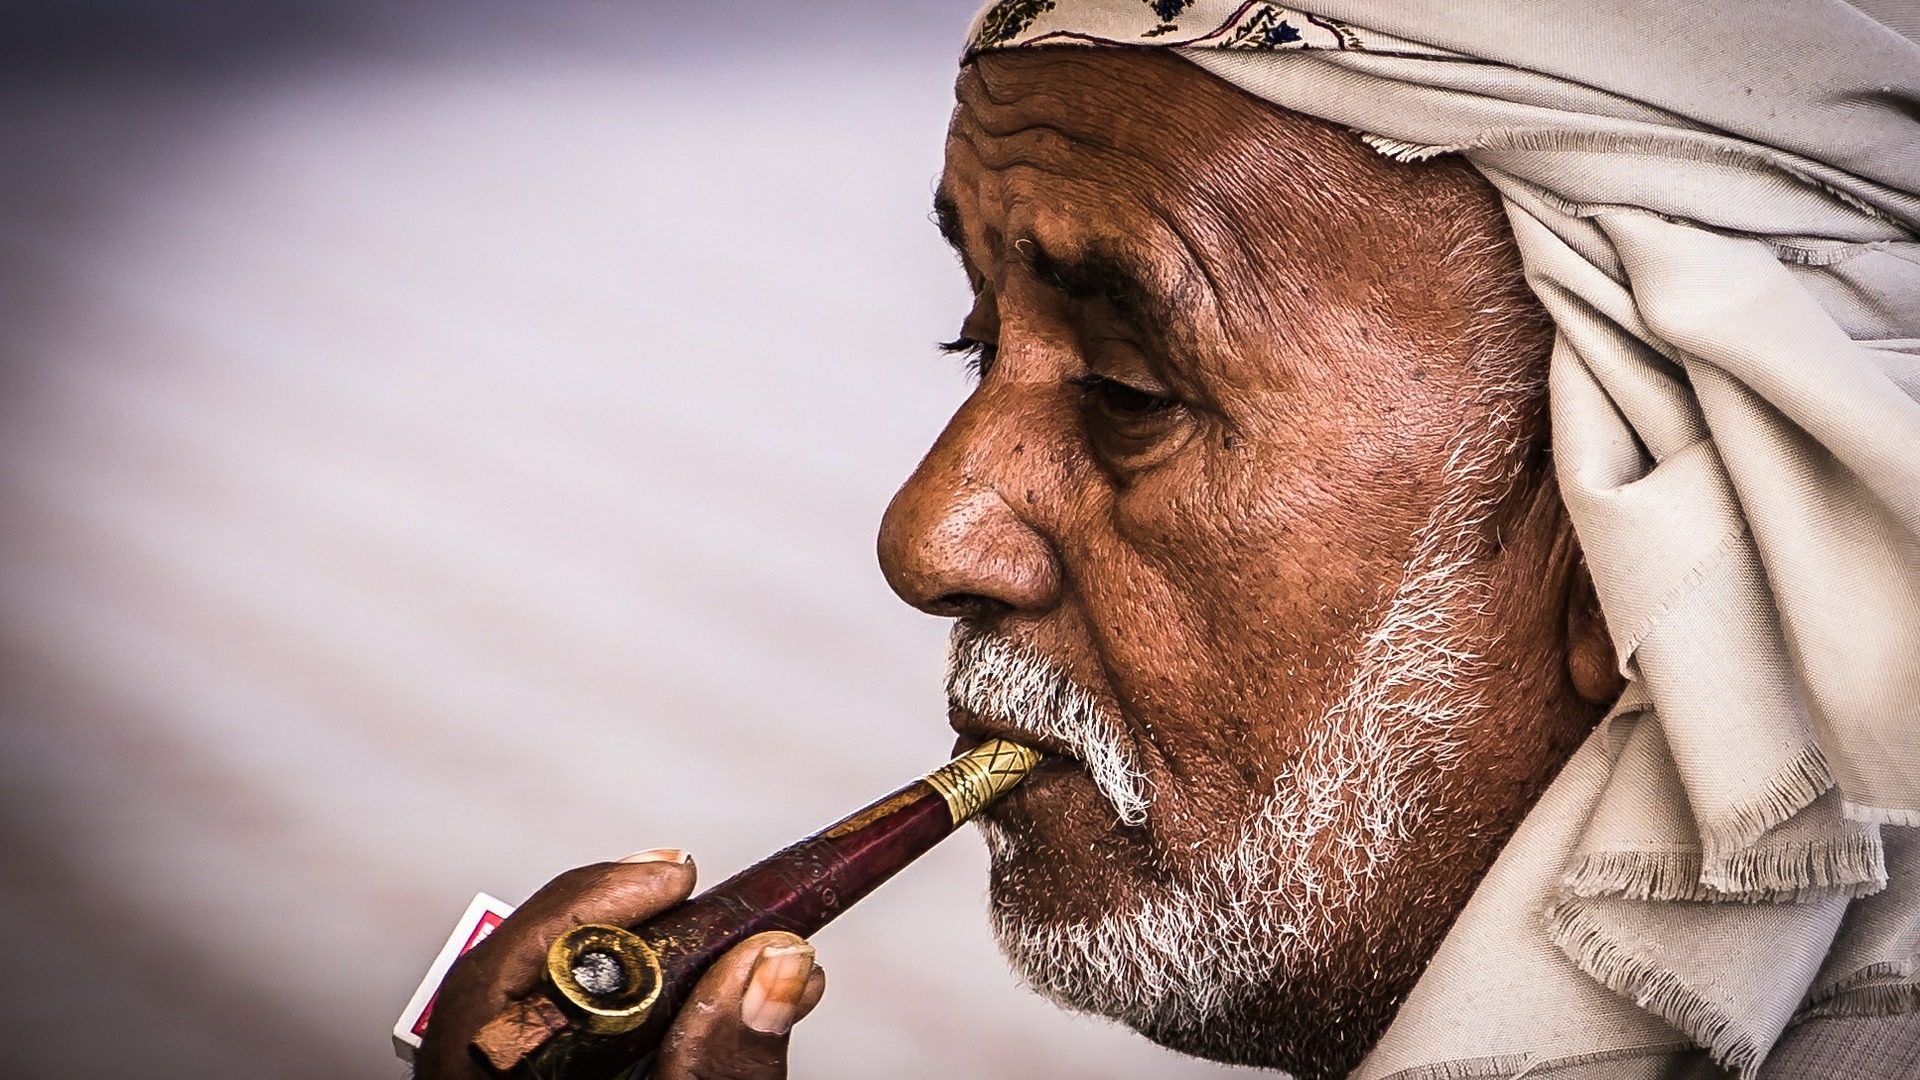 Sana (Jemen): Šetnje i istraživanje Medine 1